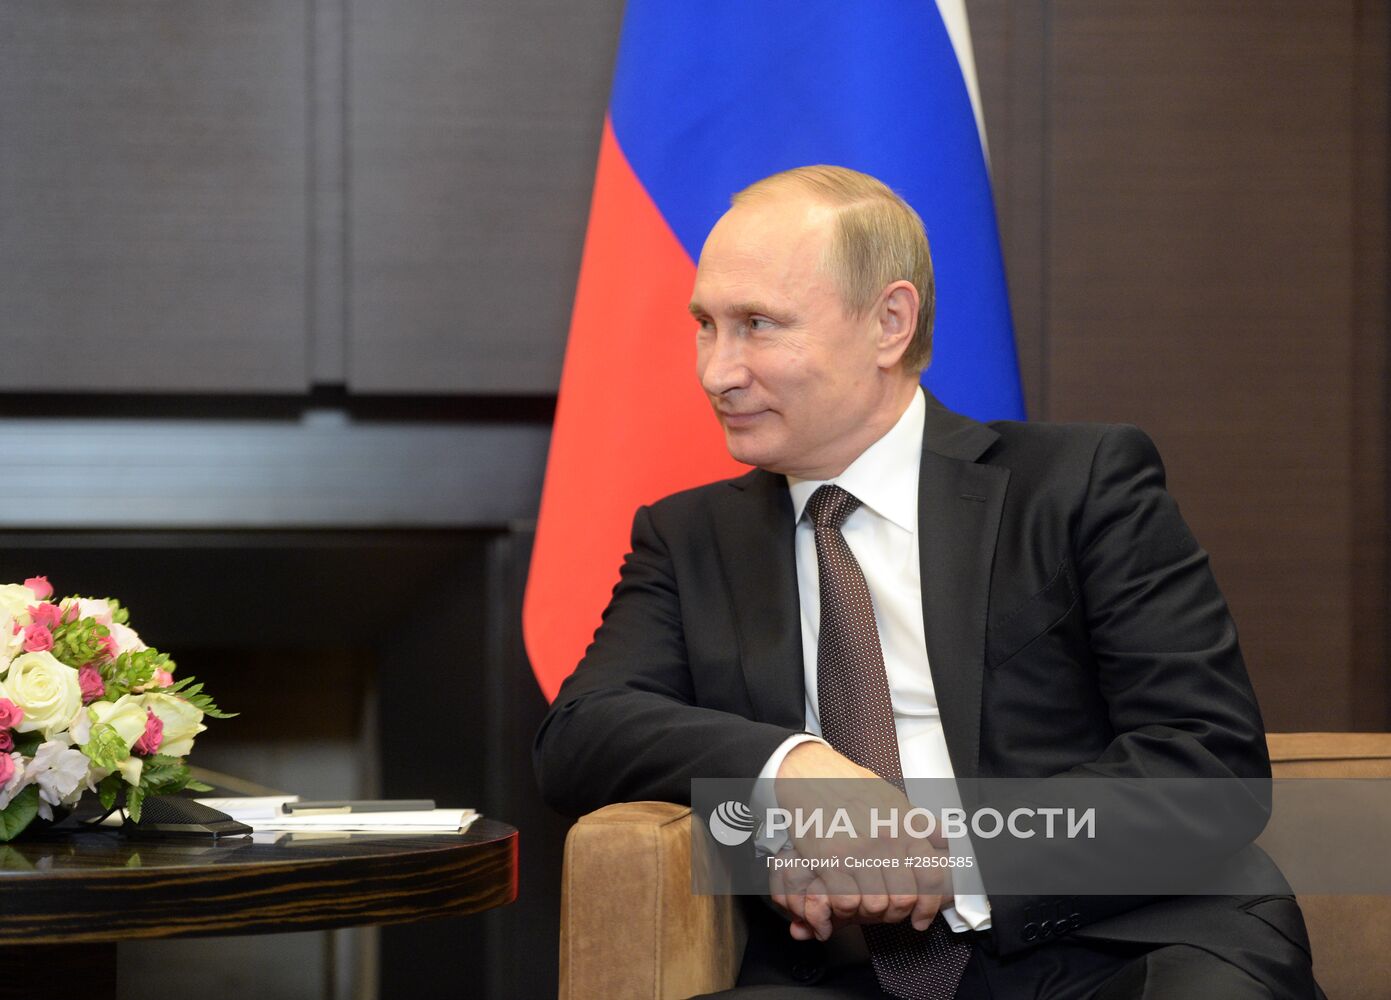 Двусторонняя встреча президента РФ В. Путина с президентом Индонезии Джоко Видодо